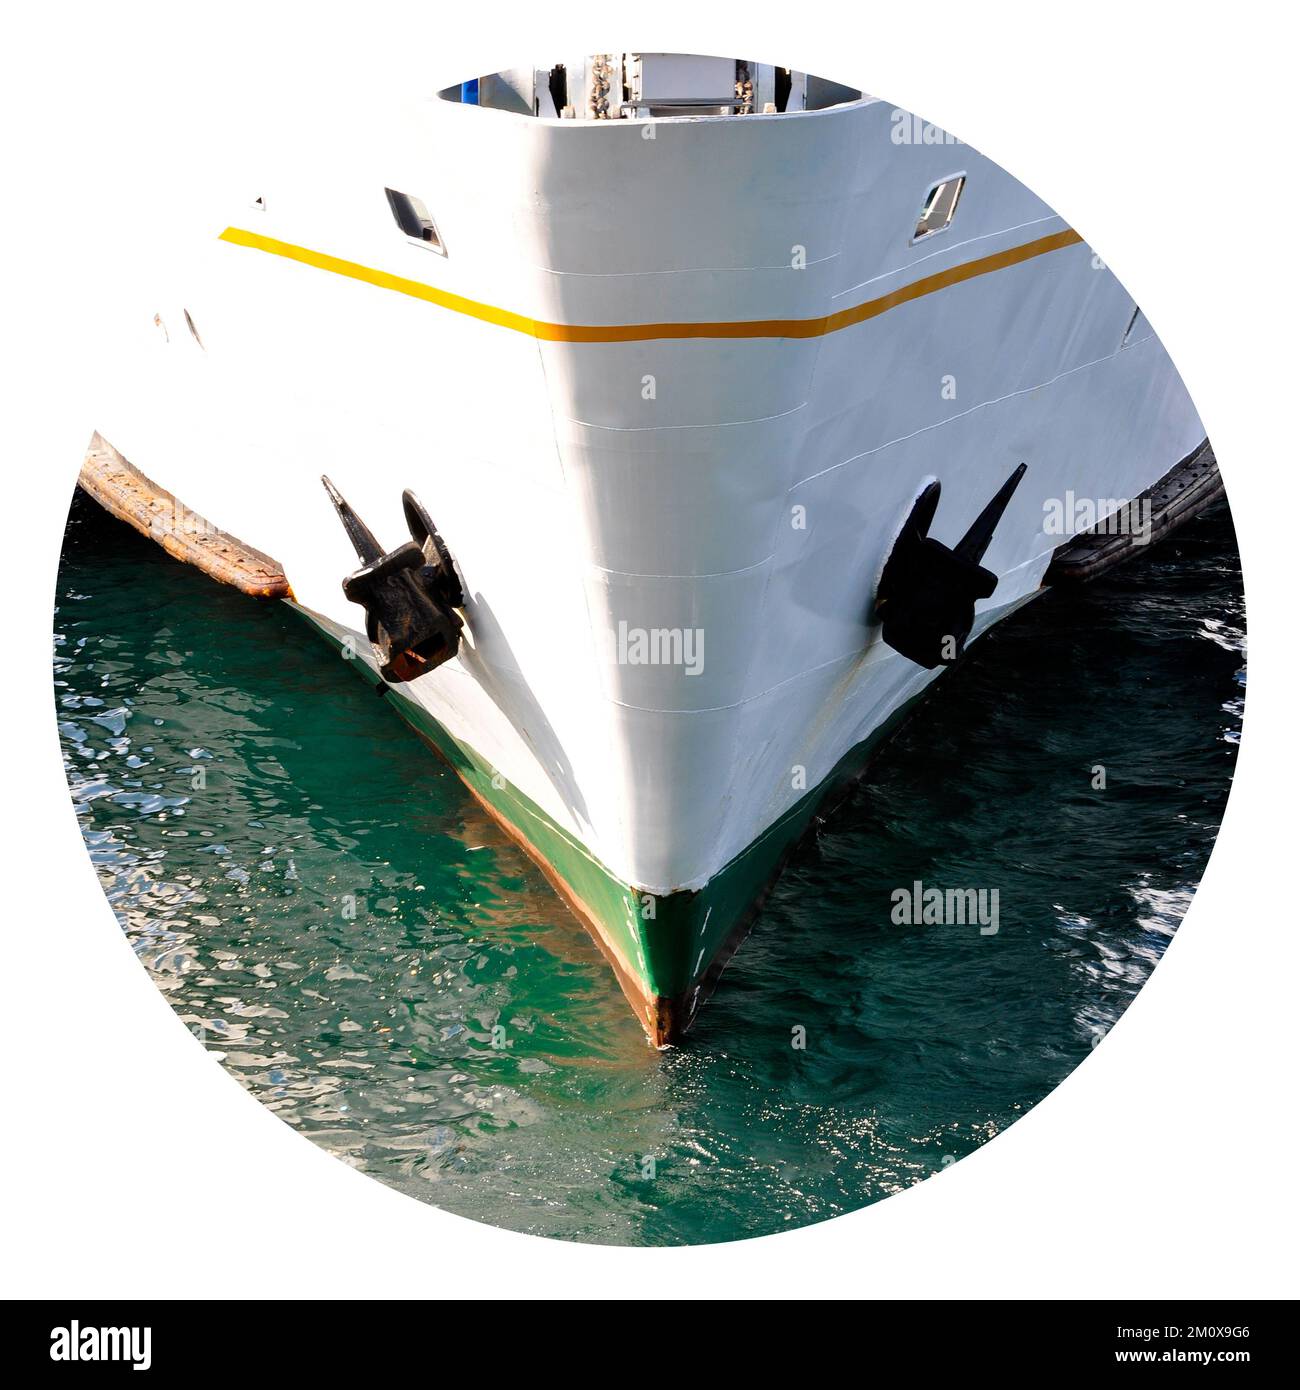 Weißes Kreuzfahrtschiff mit Fähre, Beförderung von Passagieren, Sirkeci Istanbul Türkei Stockfoto